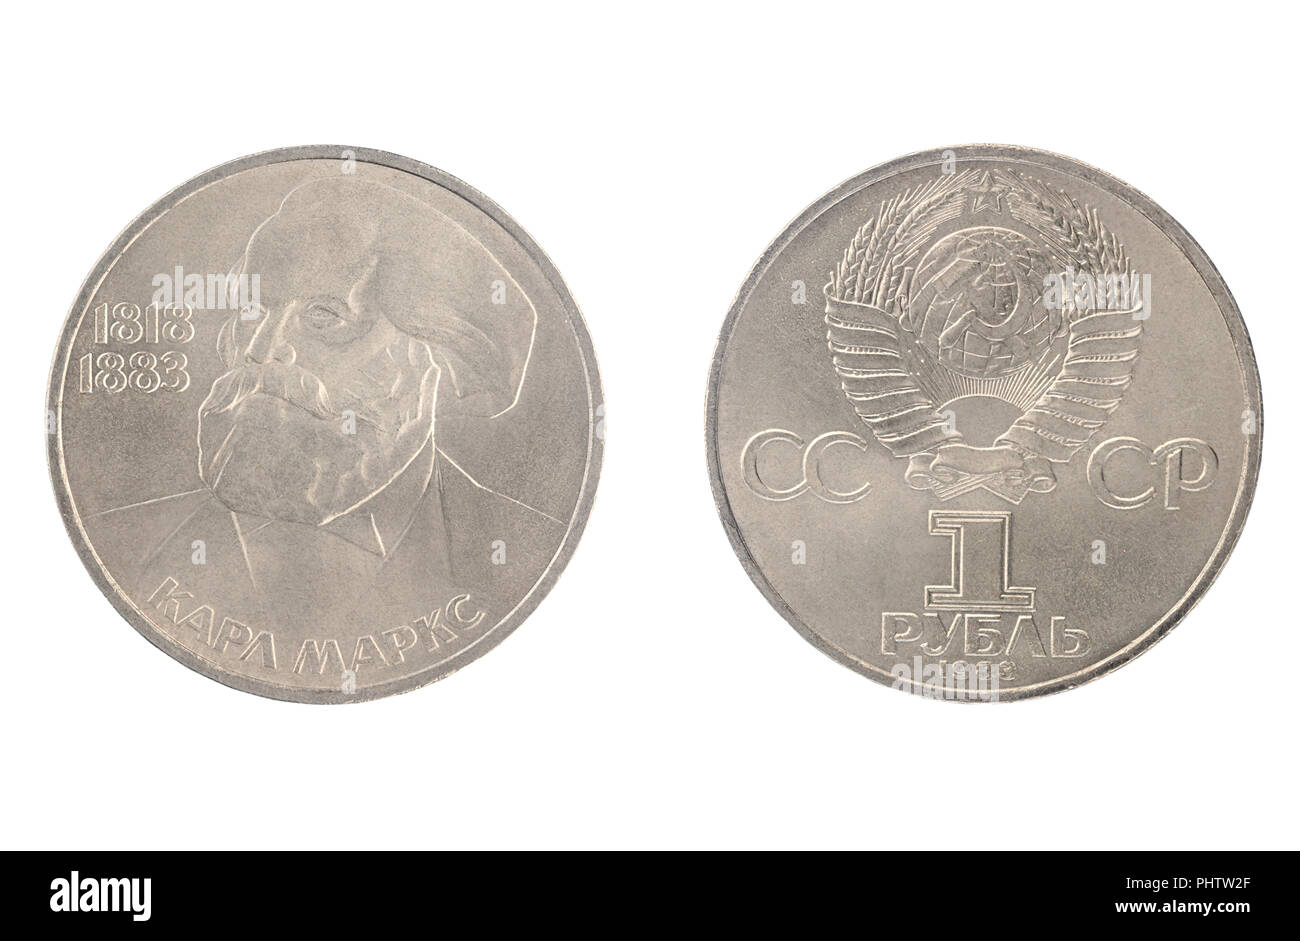 Ensemble de l'URSS médaille commémorative, la valeur nominale de 1 rouble.à partir de 1983, montre un portrait de Karl Marx (1818-1883), un philosophe politique allemande Banque D'Images